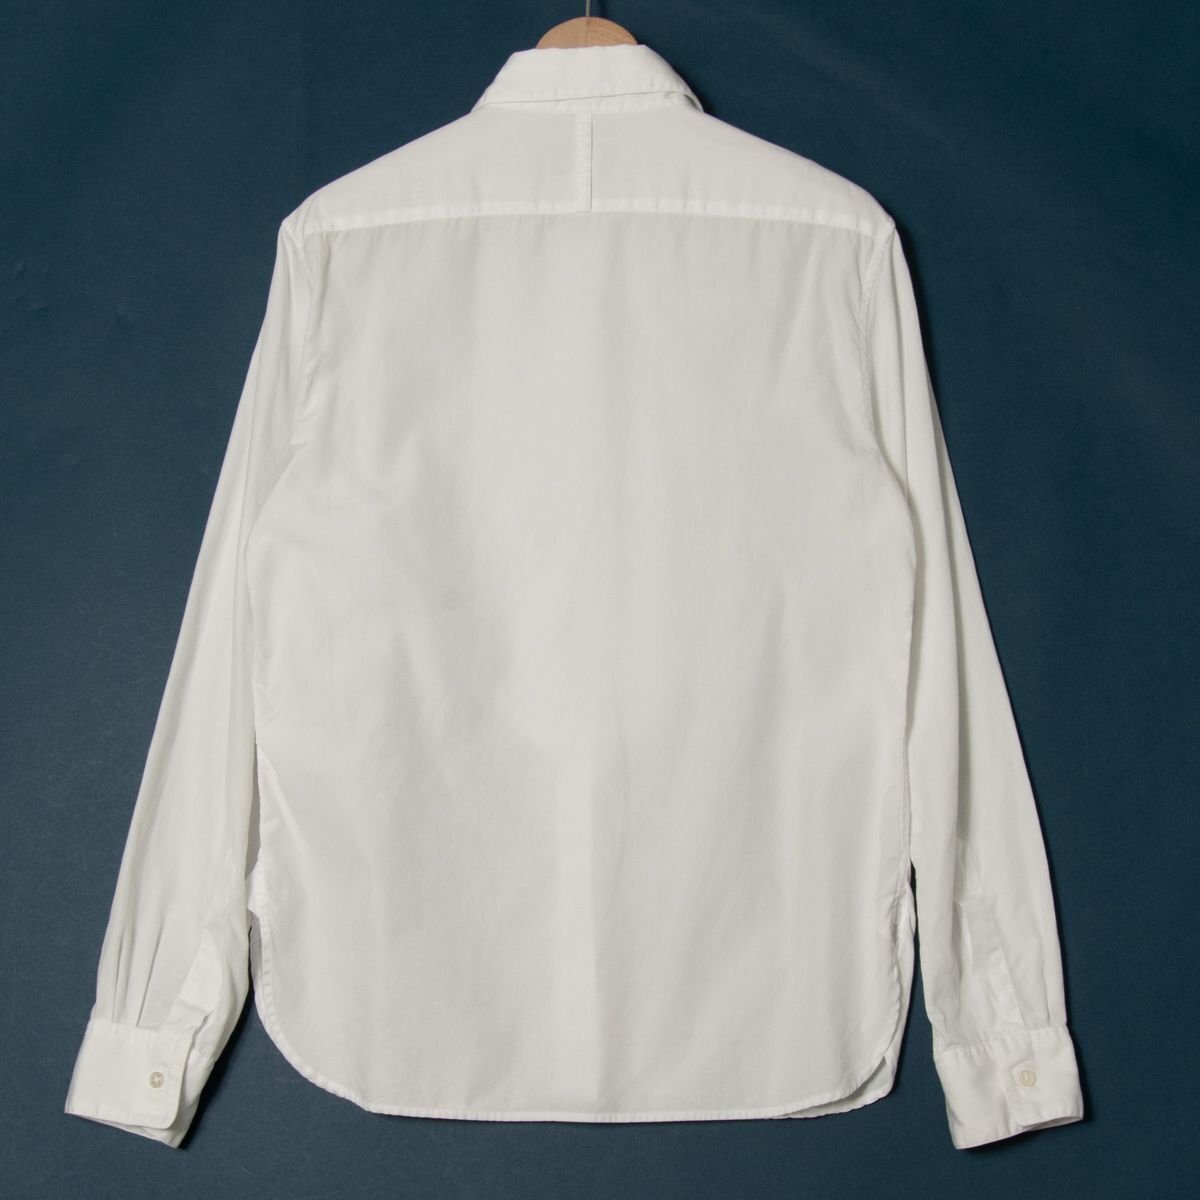 [1 jpy start ] mail service 0 MARGARET HOWELL Margaret Howell long sleeve shirt blouse tops cotton 100% white plain 2 made in Japan 